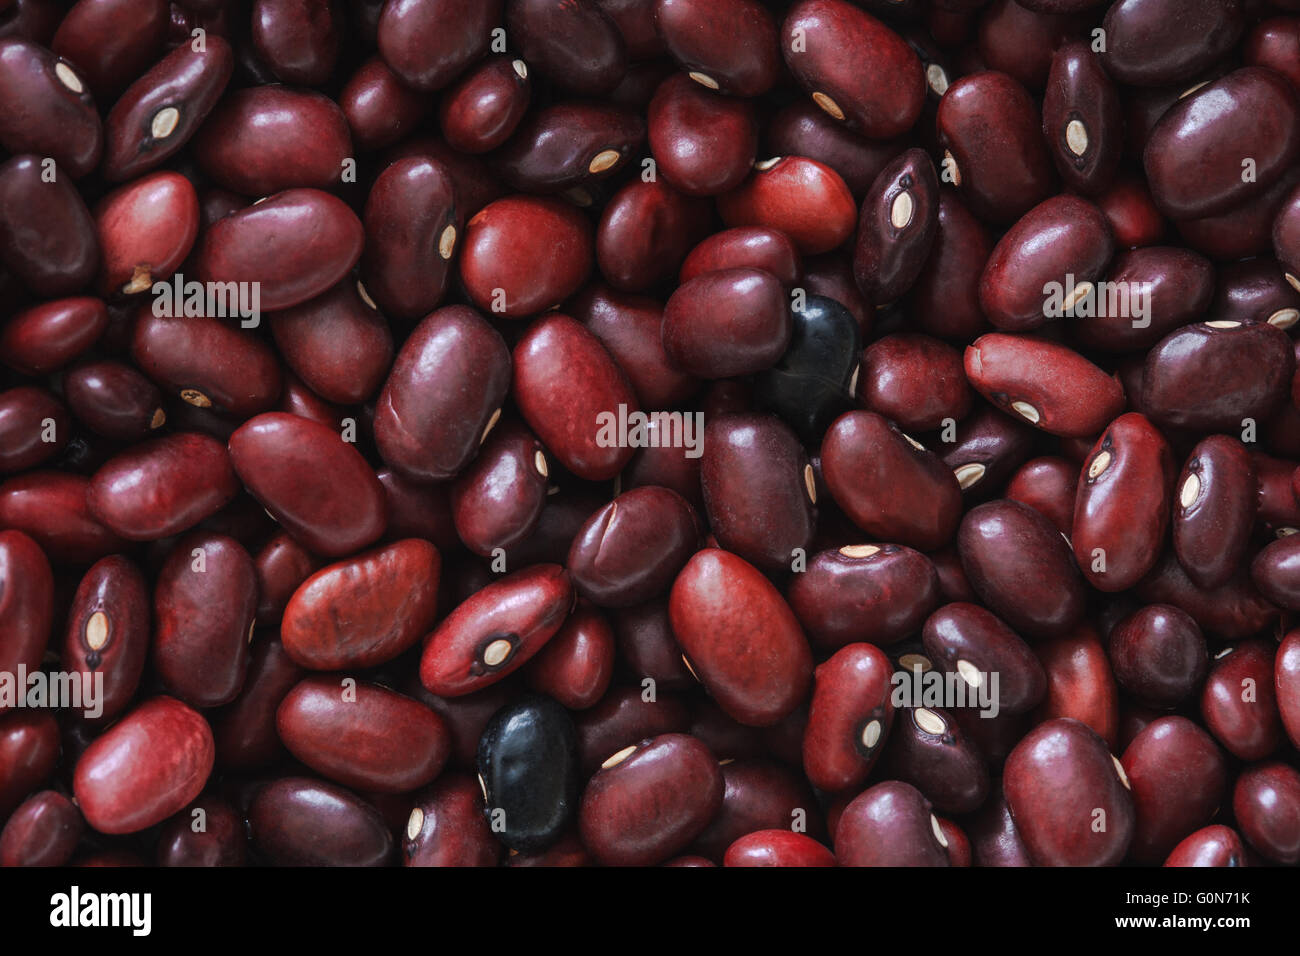 red adzuki beans Stock Photo